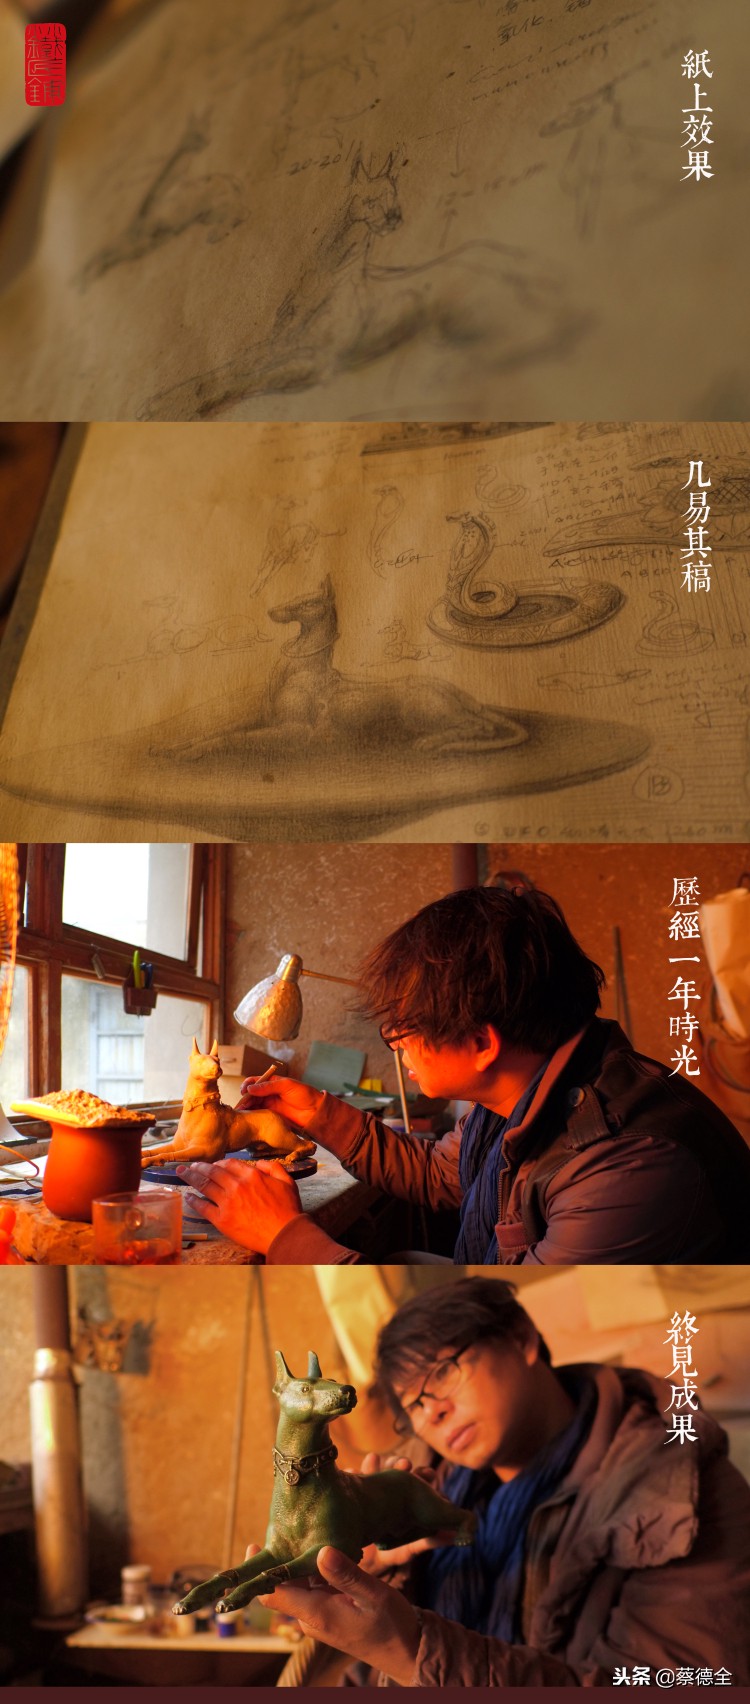 小小的打铁匠携著名艺术家赵光晖协同公布铜雕塑著作《哮天犬》